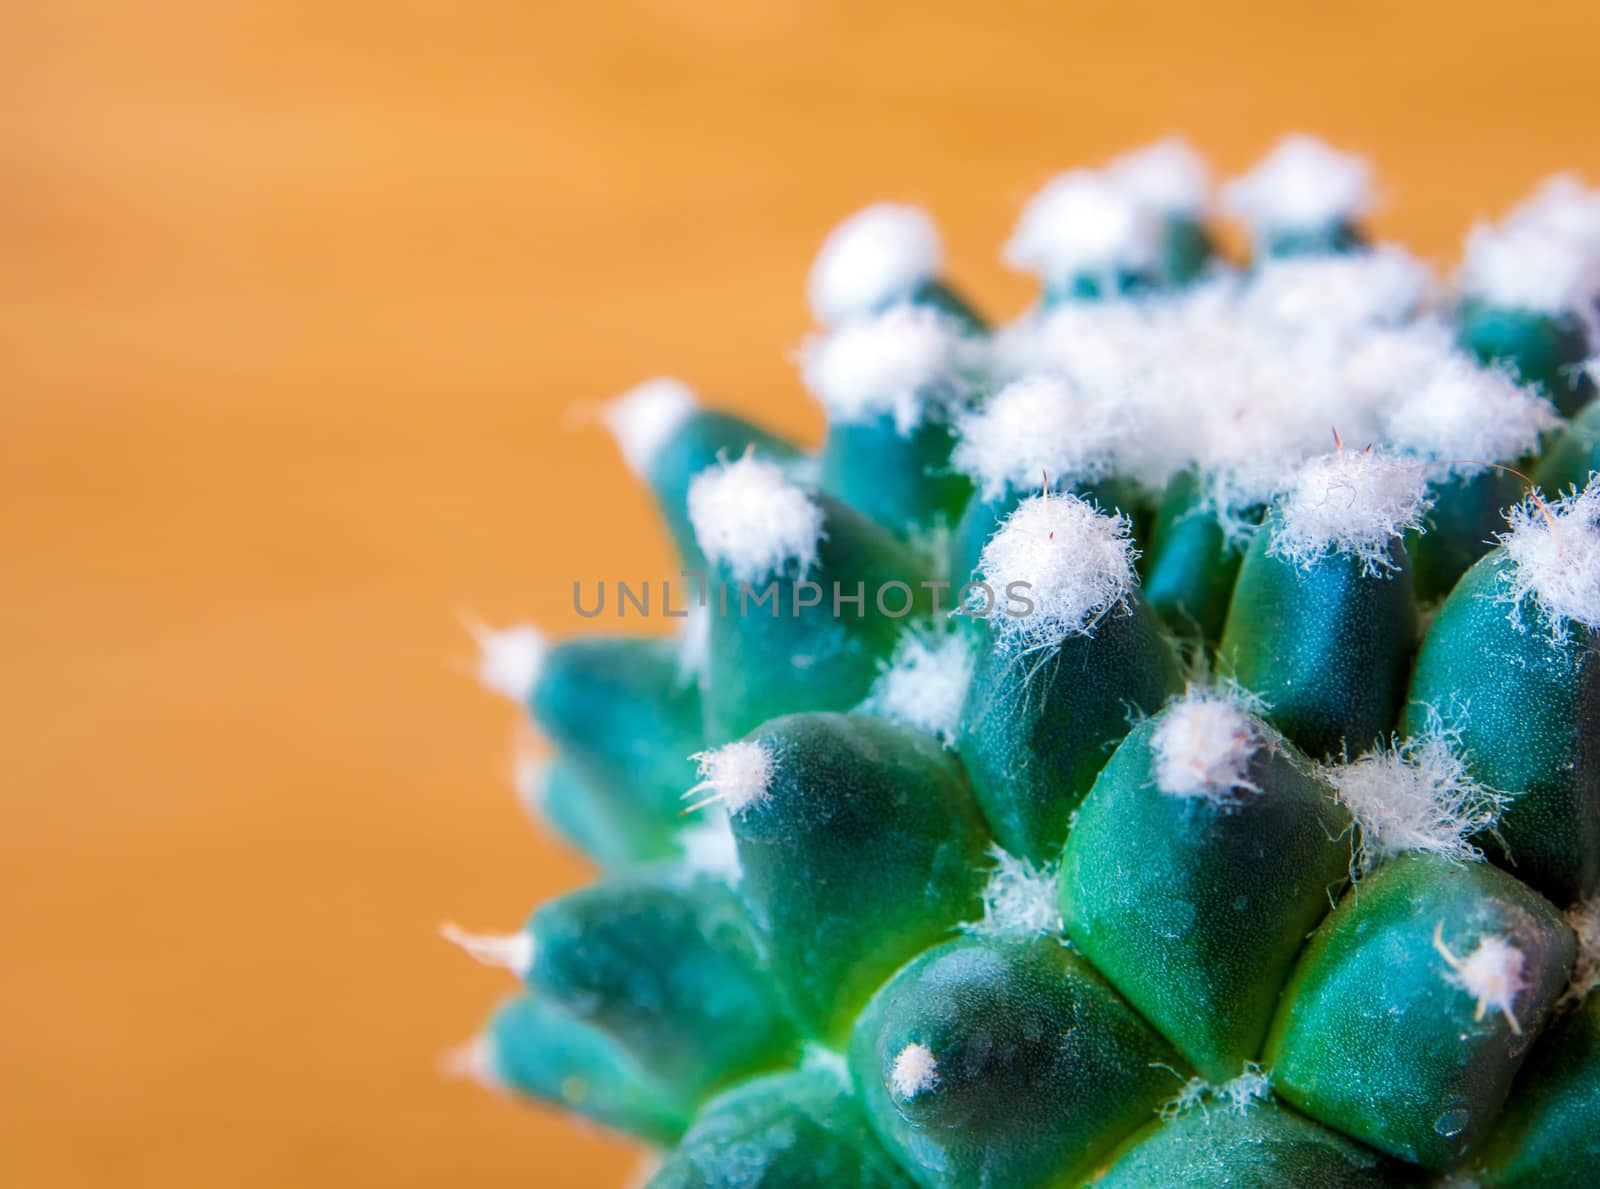 Cactus succulent plant close-up, Mammillaria gracilis cv. oruga blanca